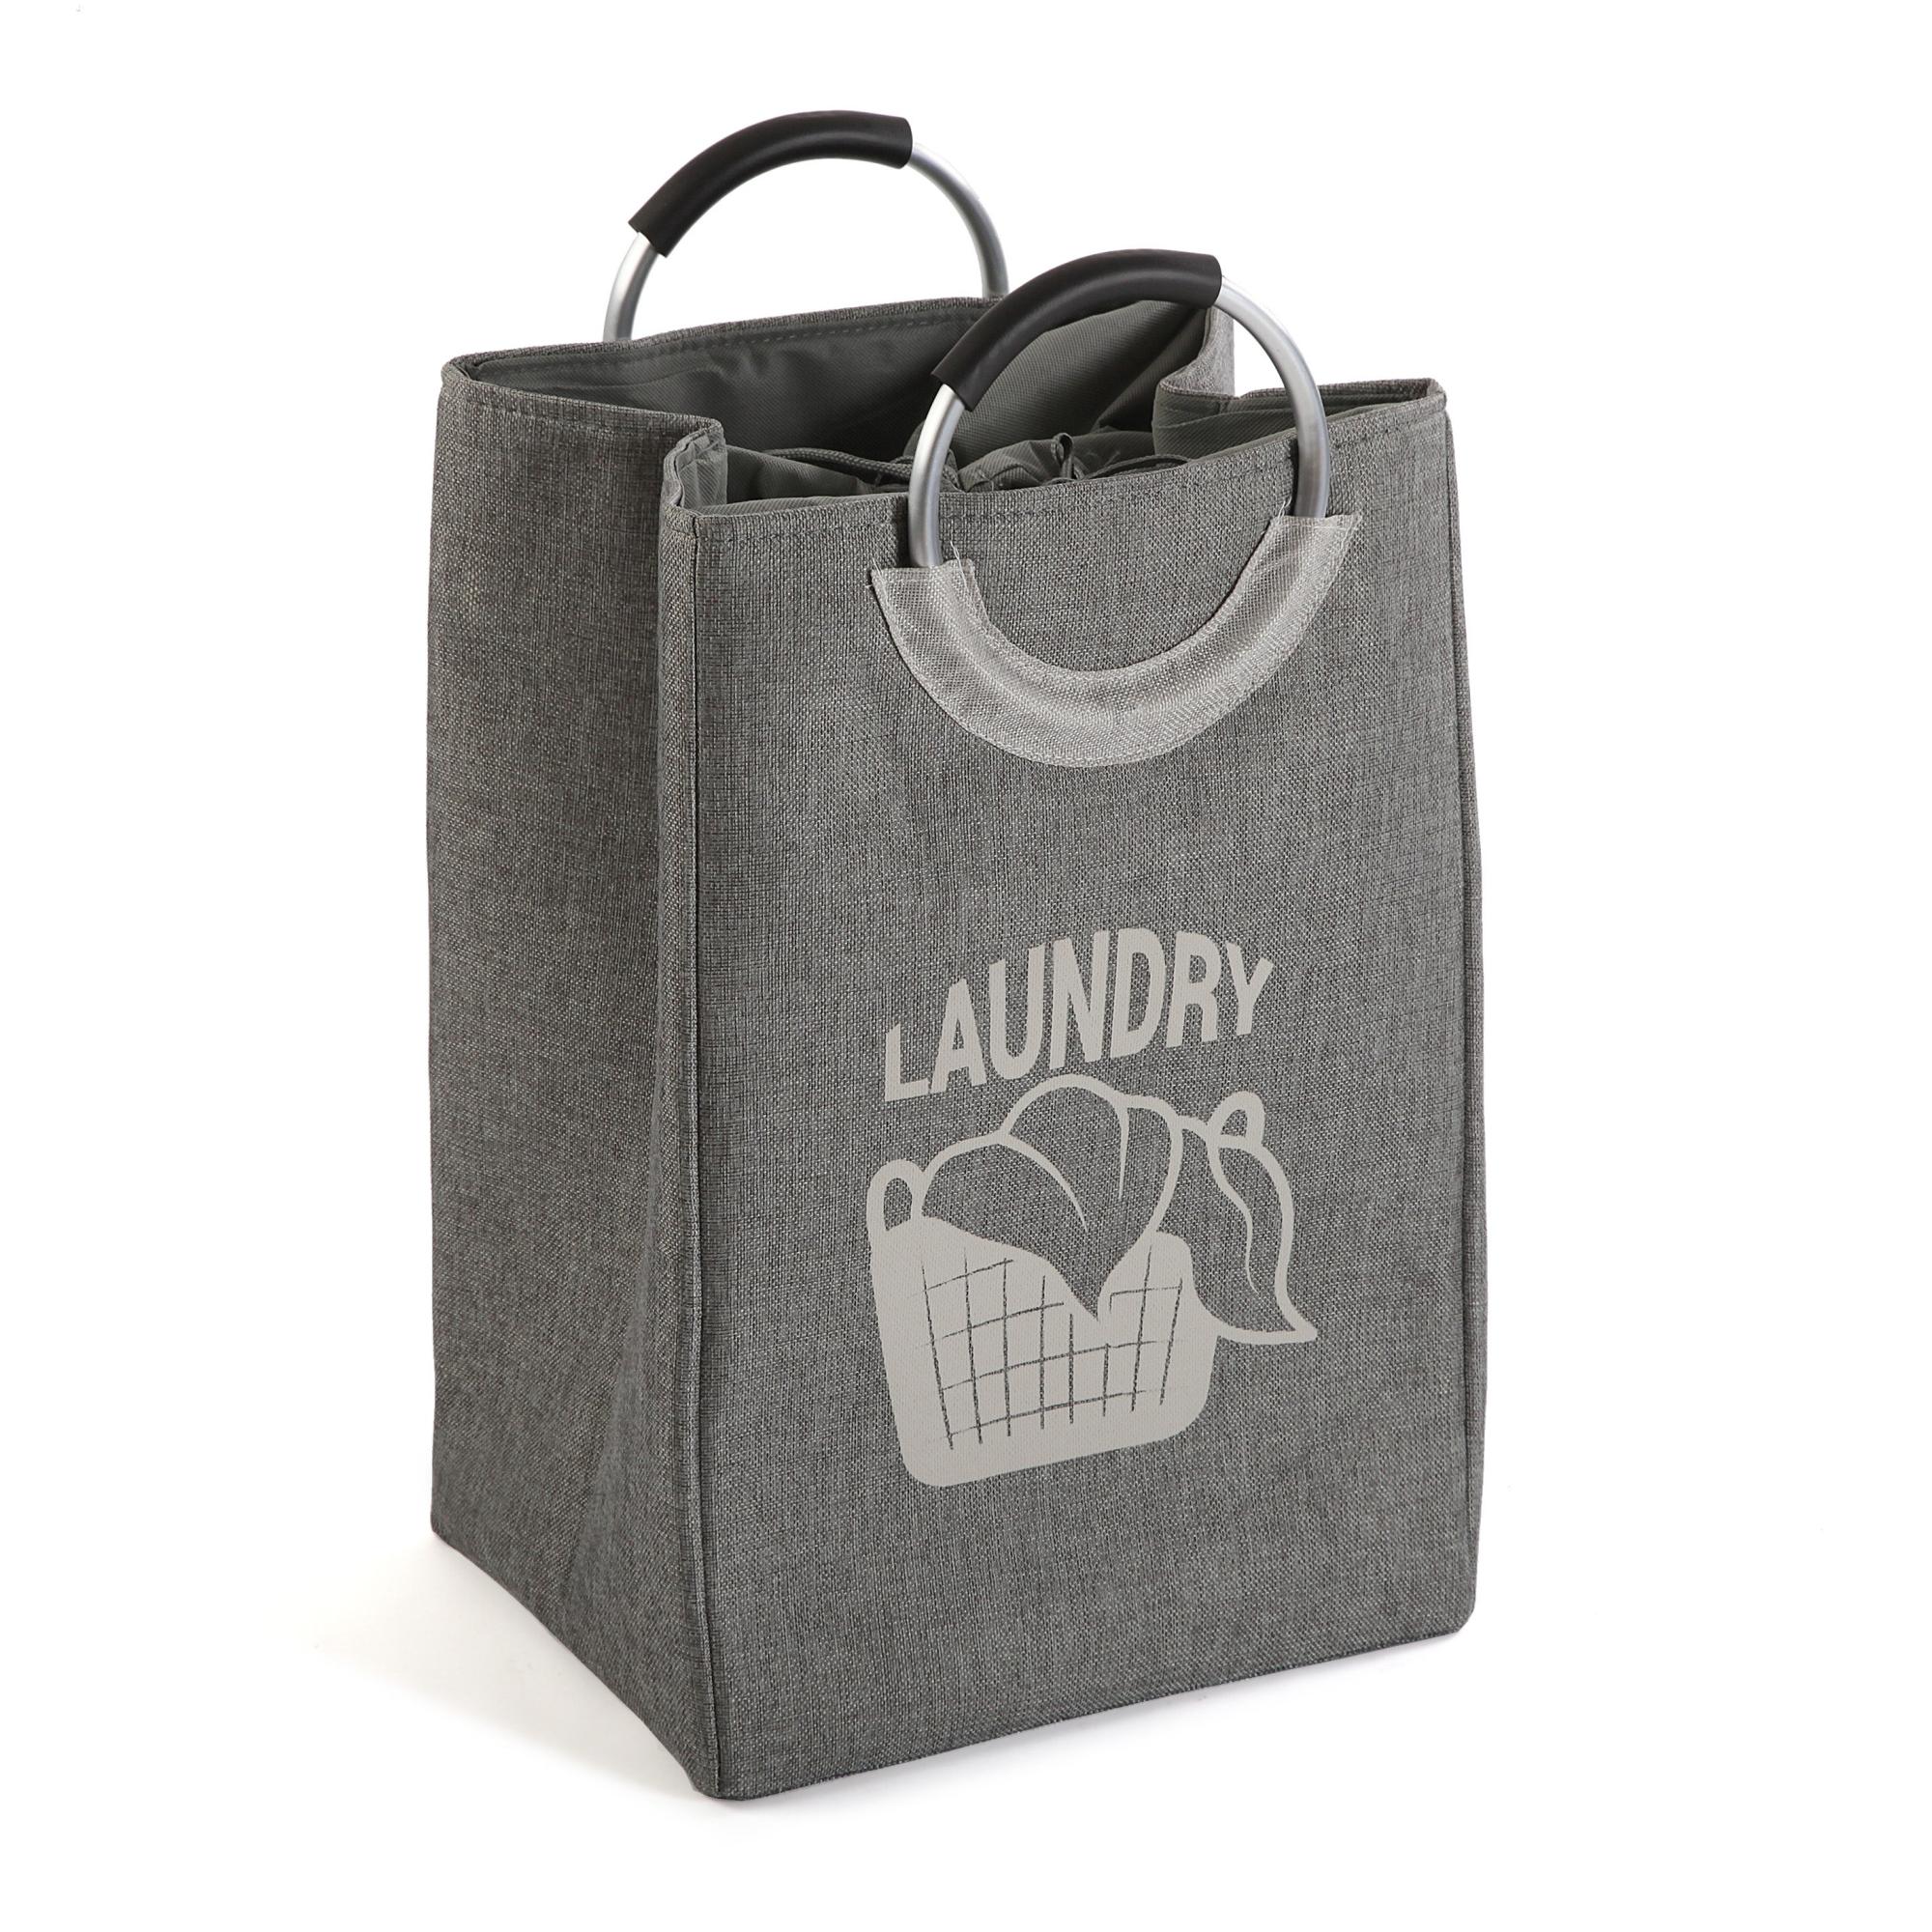 Cesto de ropa laundry gris / plata